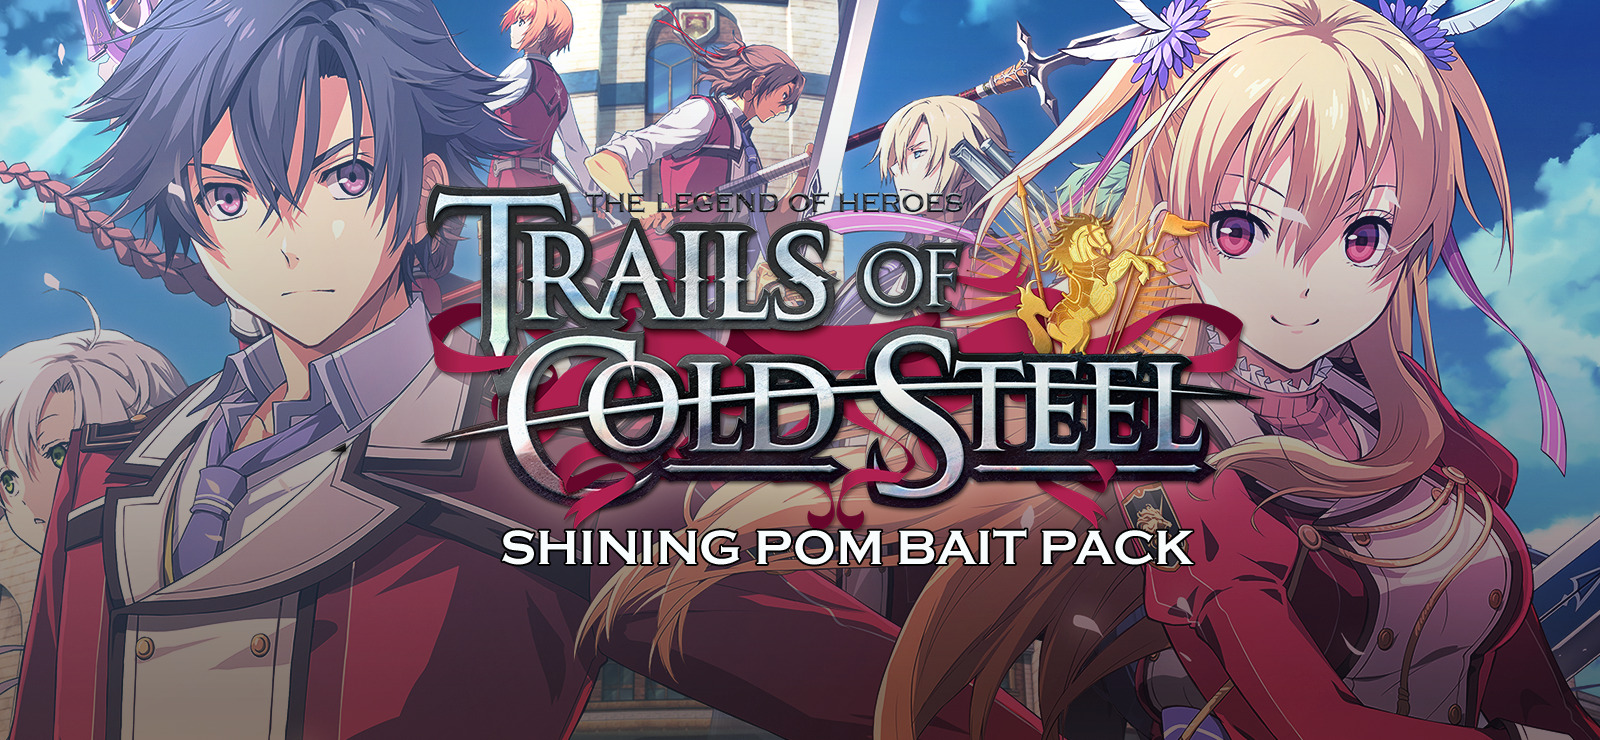 Legend of Heroes: Trails Cold Steel - Pom Bait Pack on GOG.com